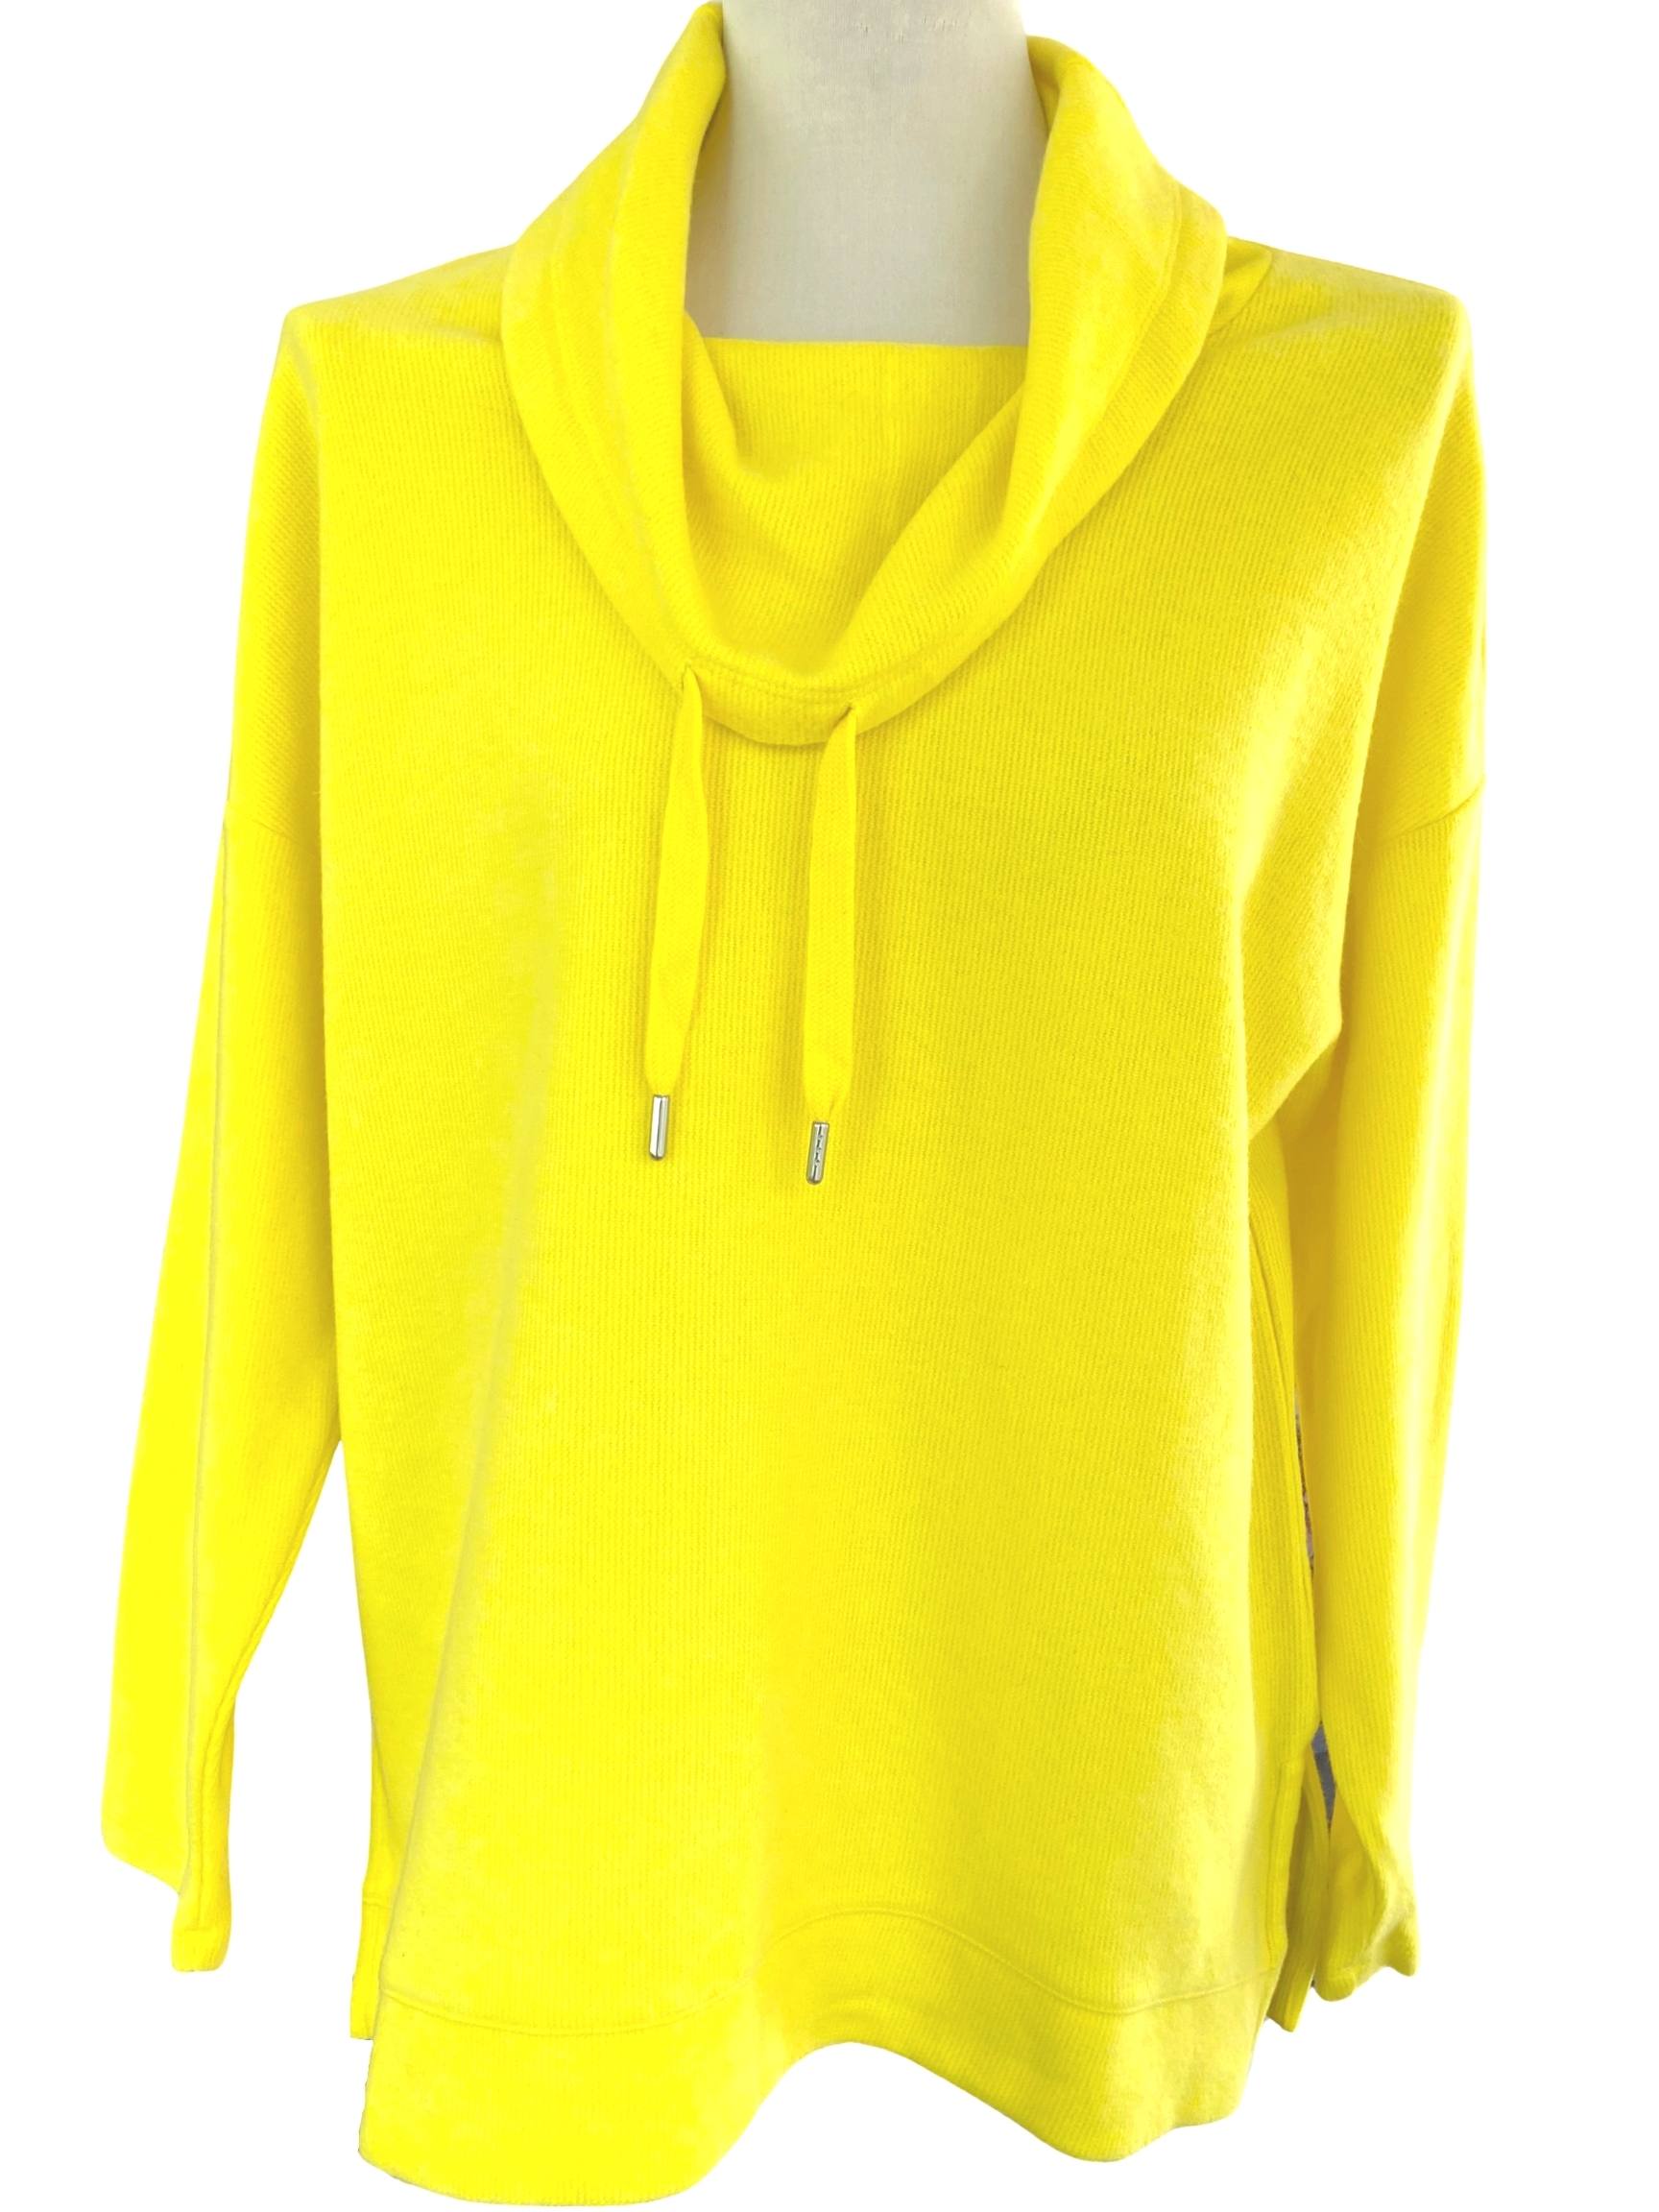 Bright Winter BANANA REPUBLIC yellow sweatshirt